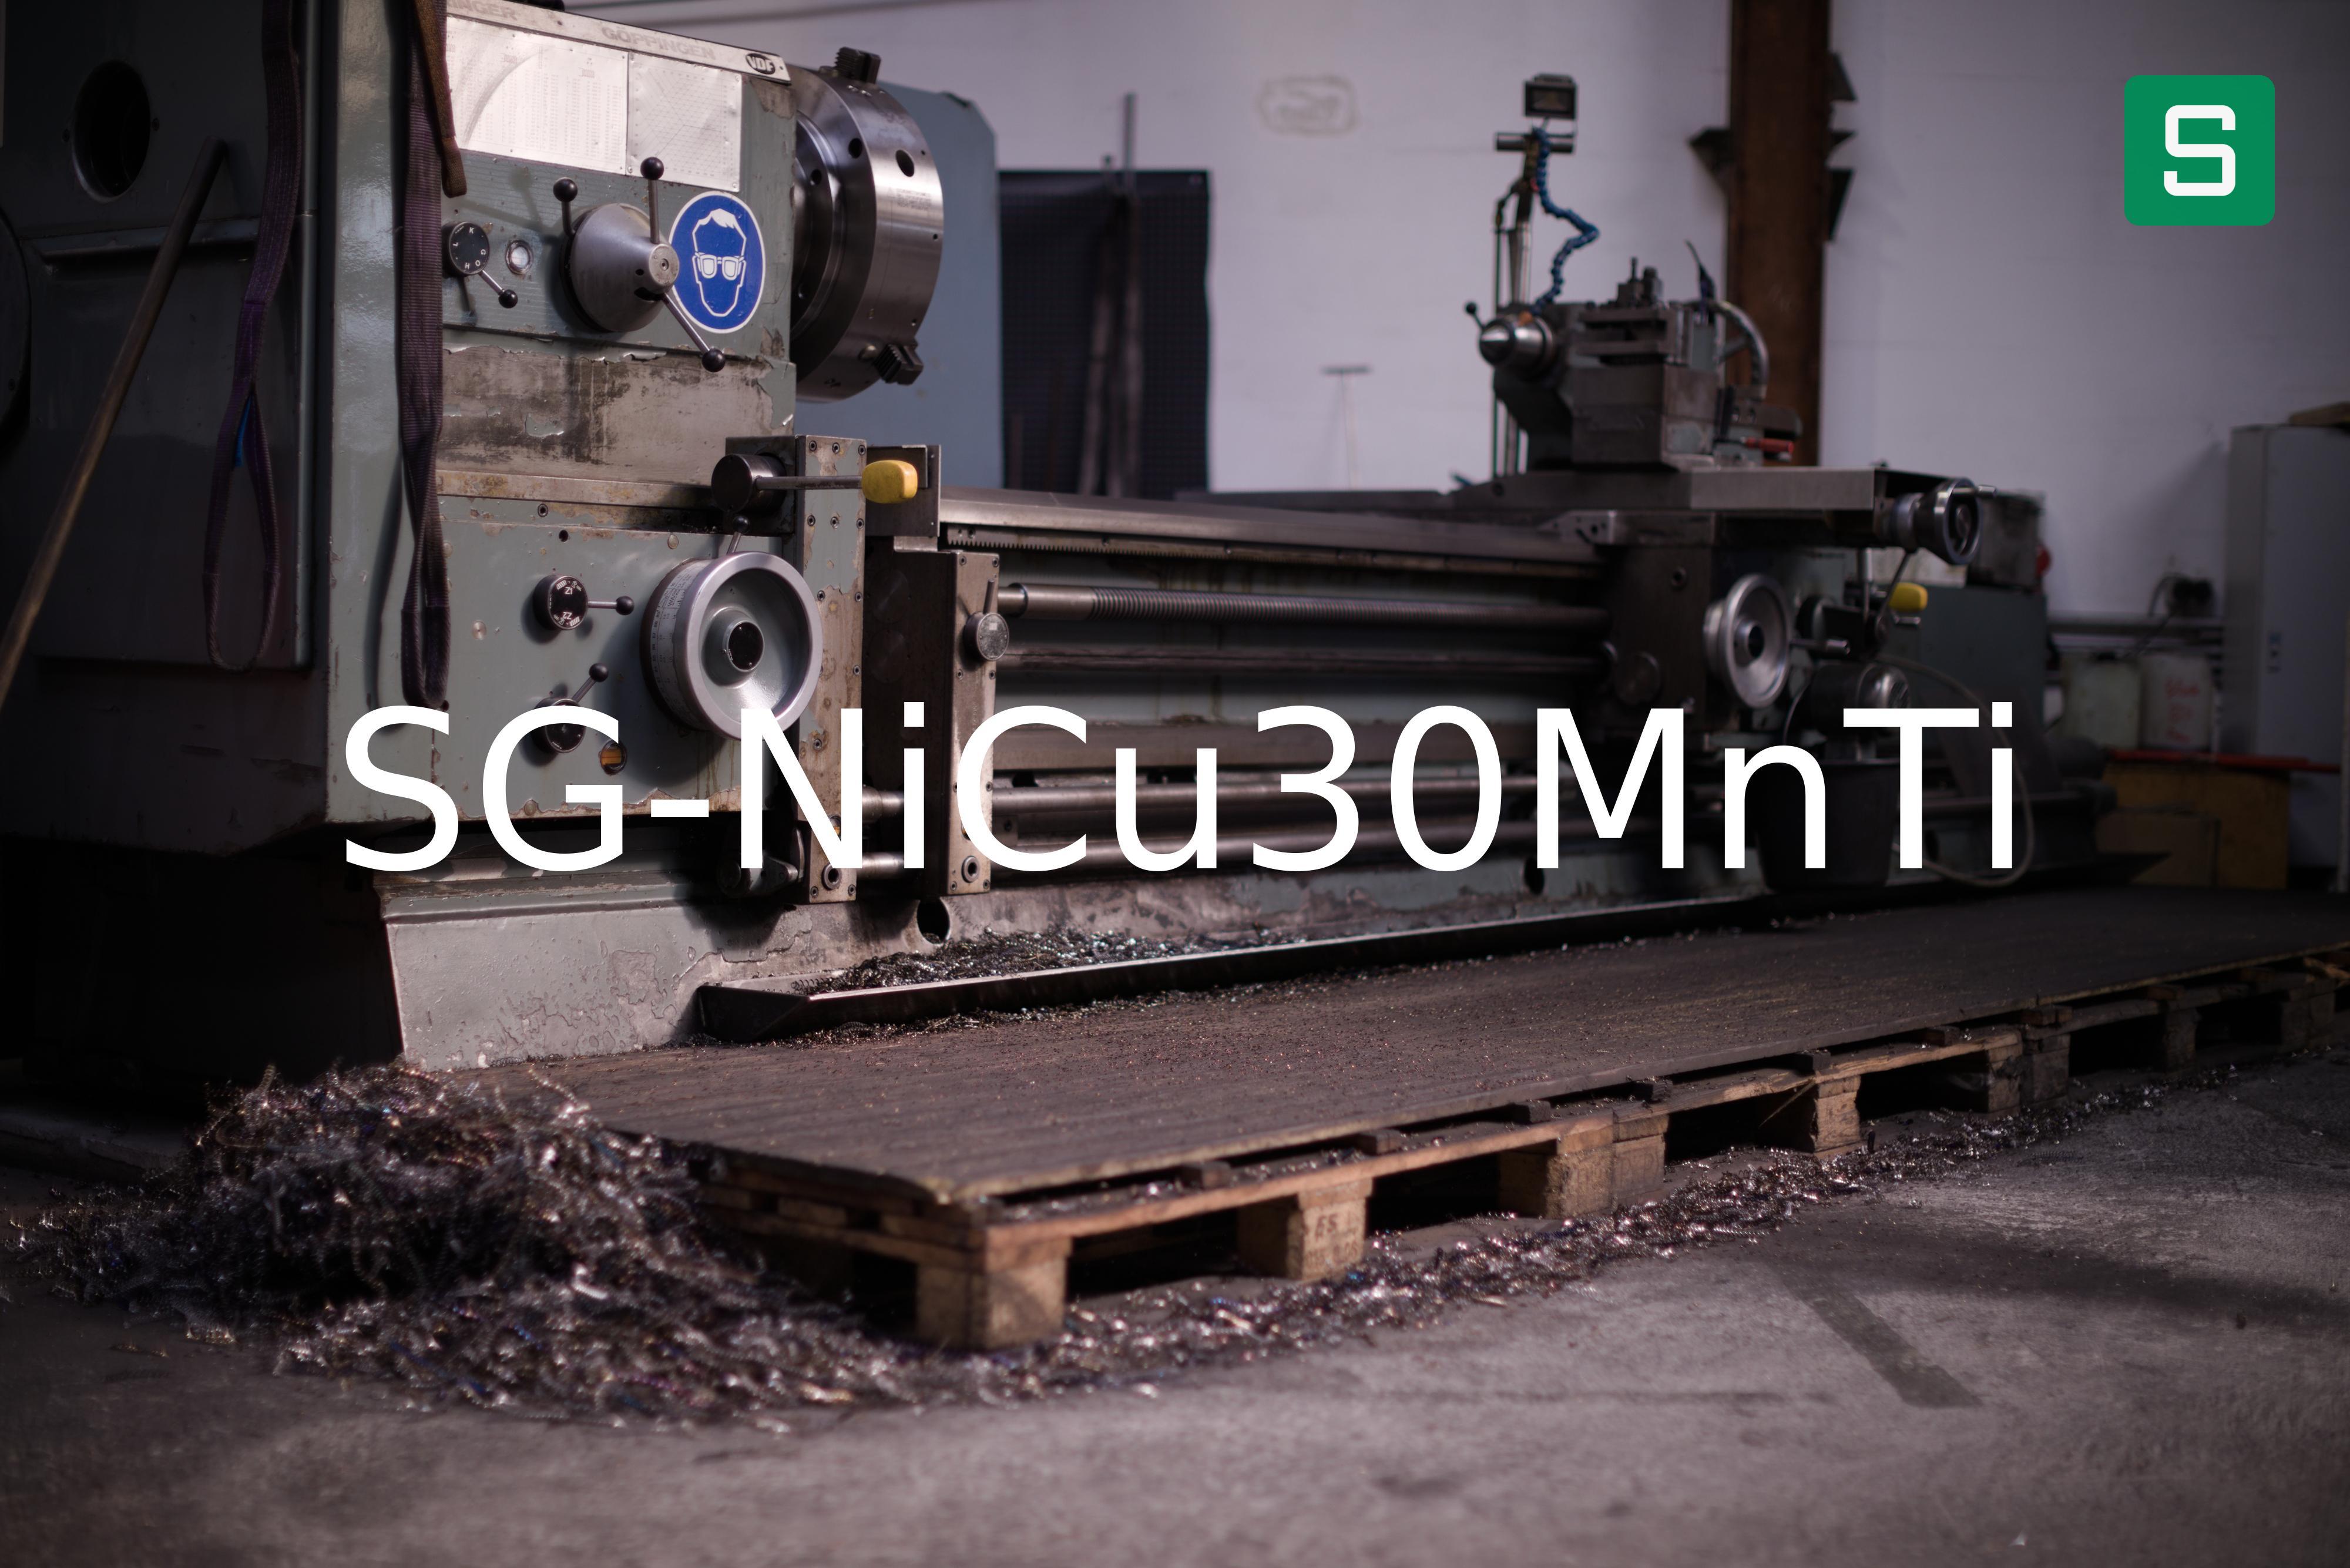 Steel Material: SG-NiCu30MnTi